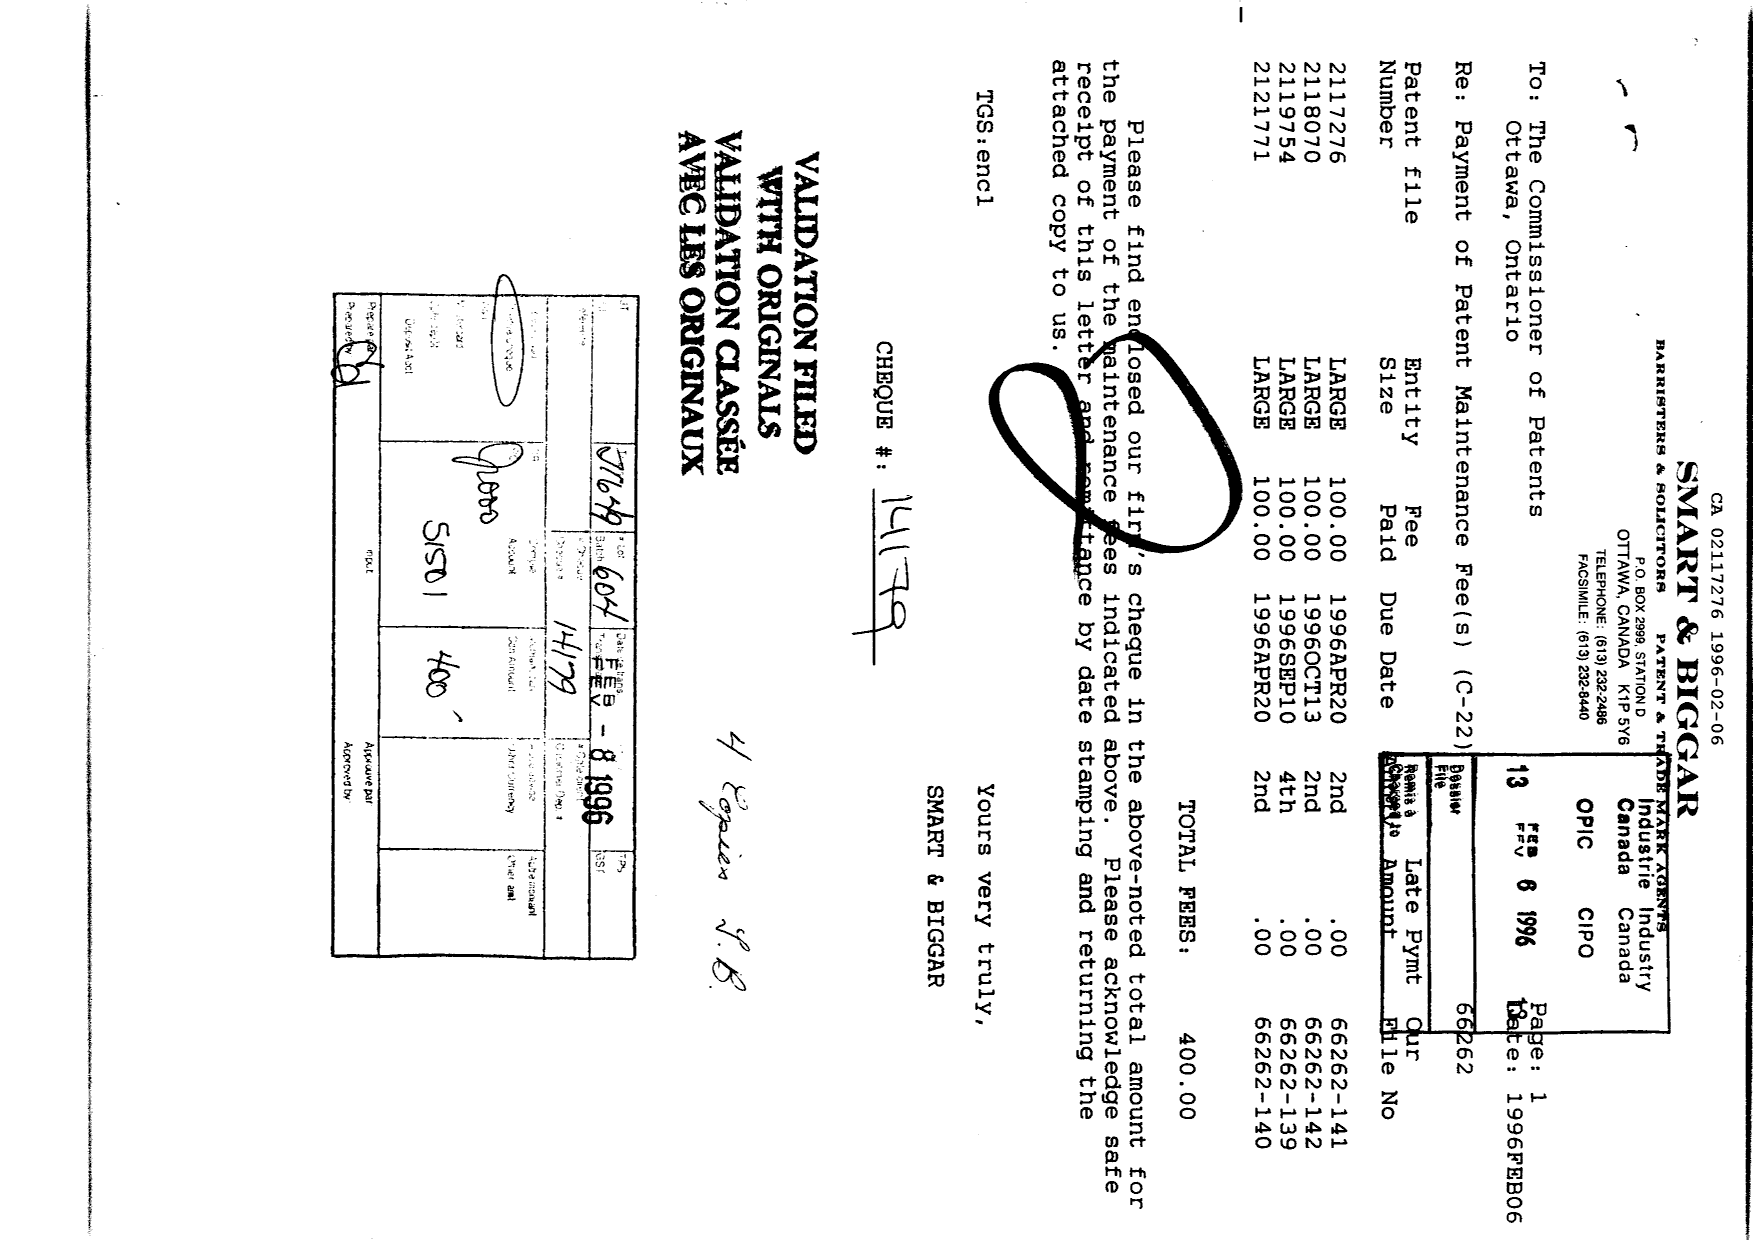 Document de brevet canadien 2117276. Taxes 19951206. Image 1 de 1